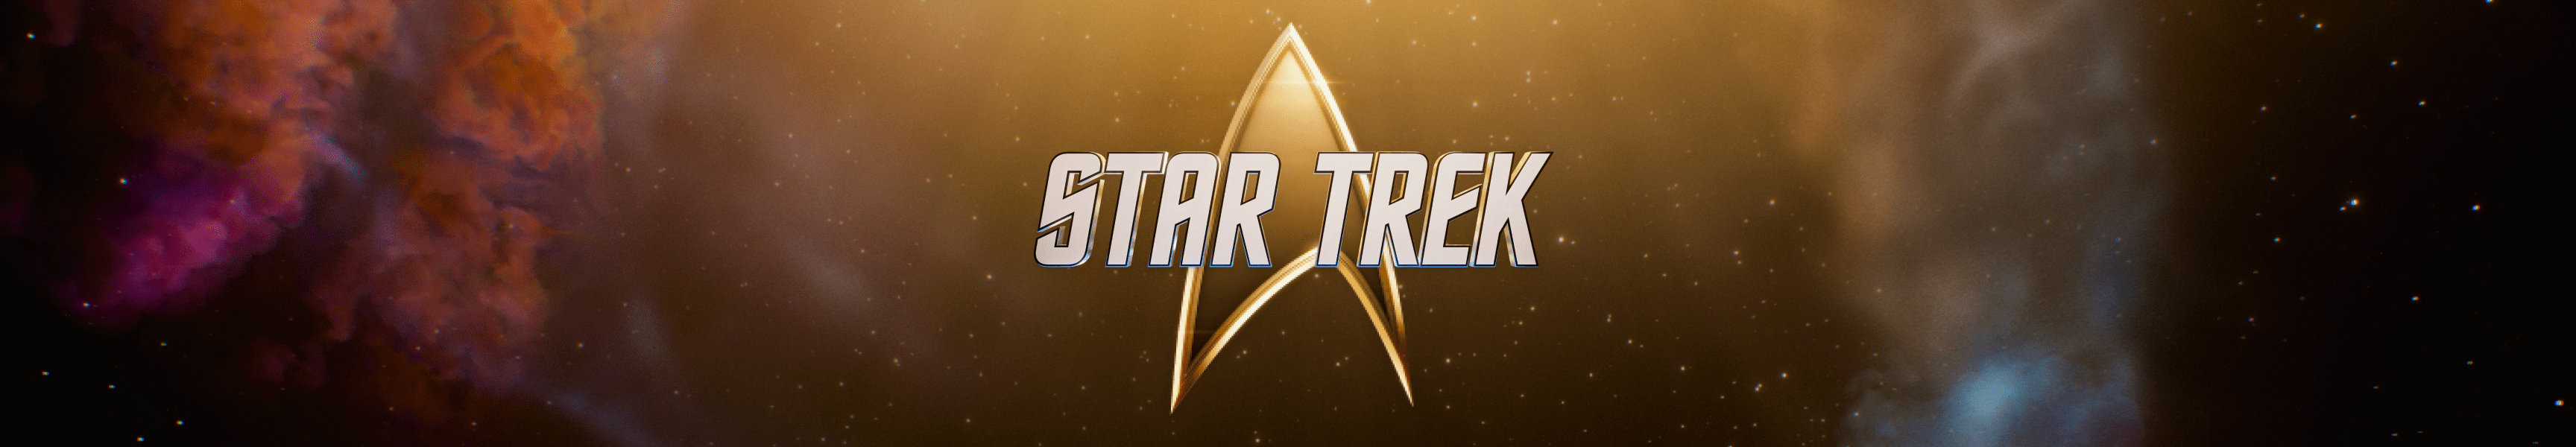 Star Trek Camarote del capitán